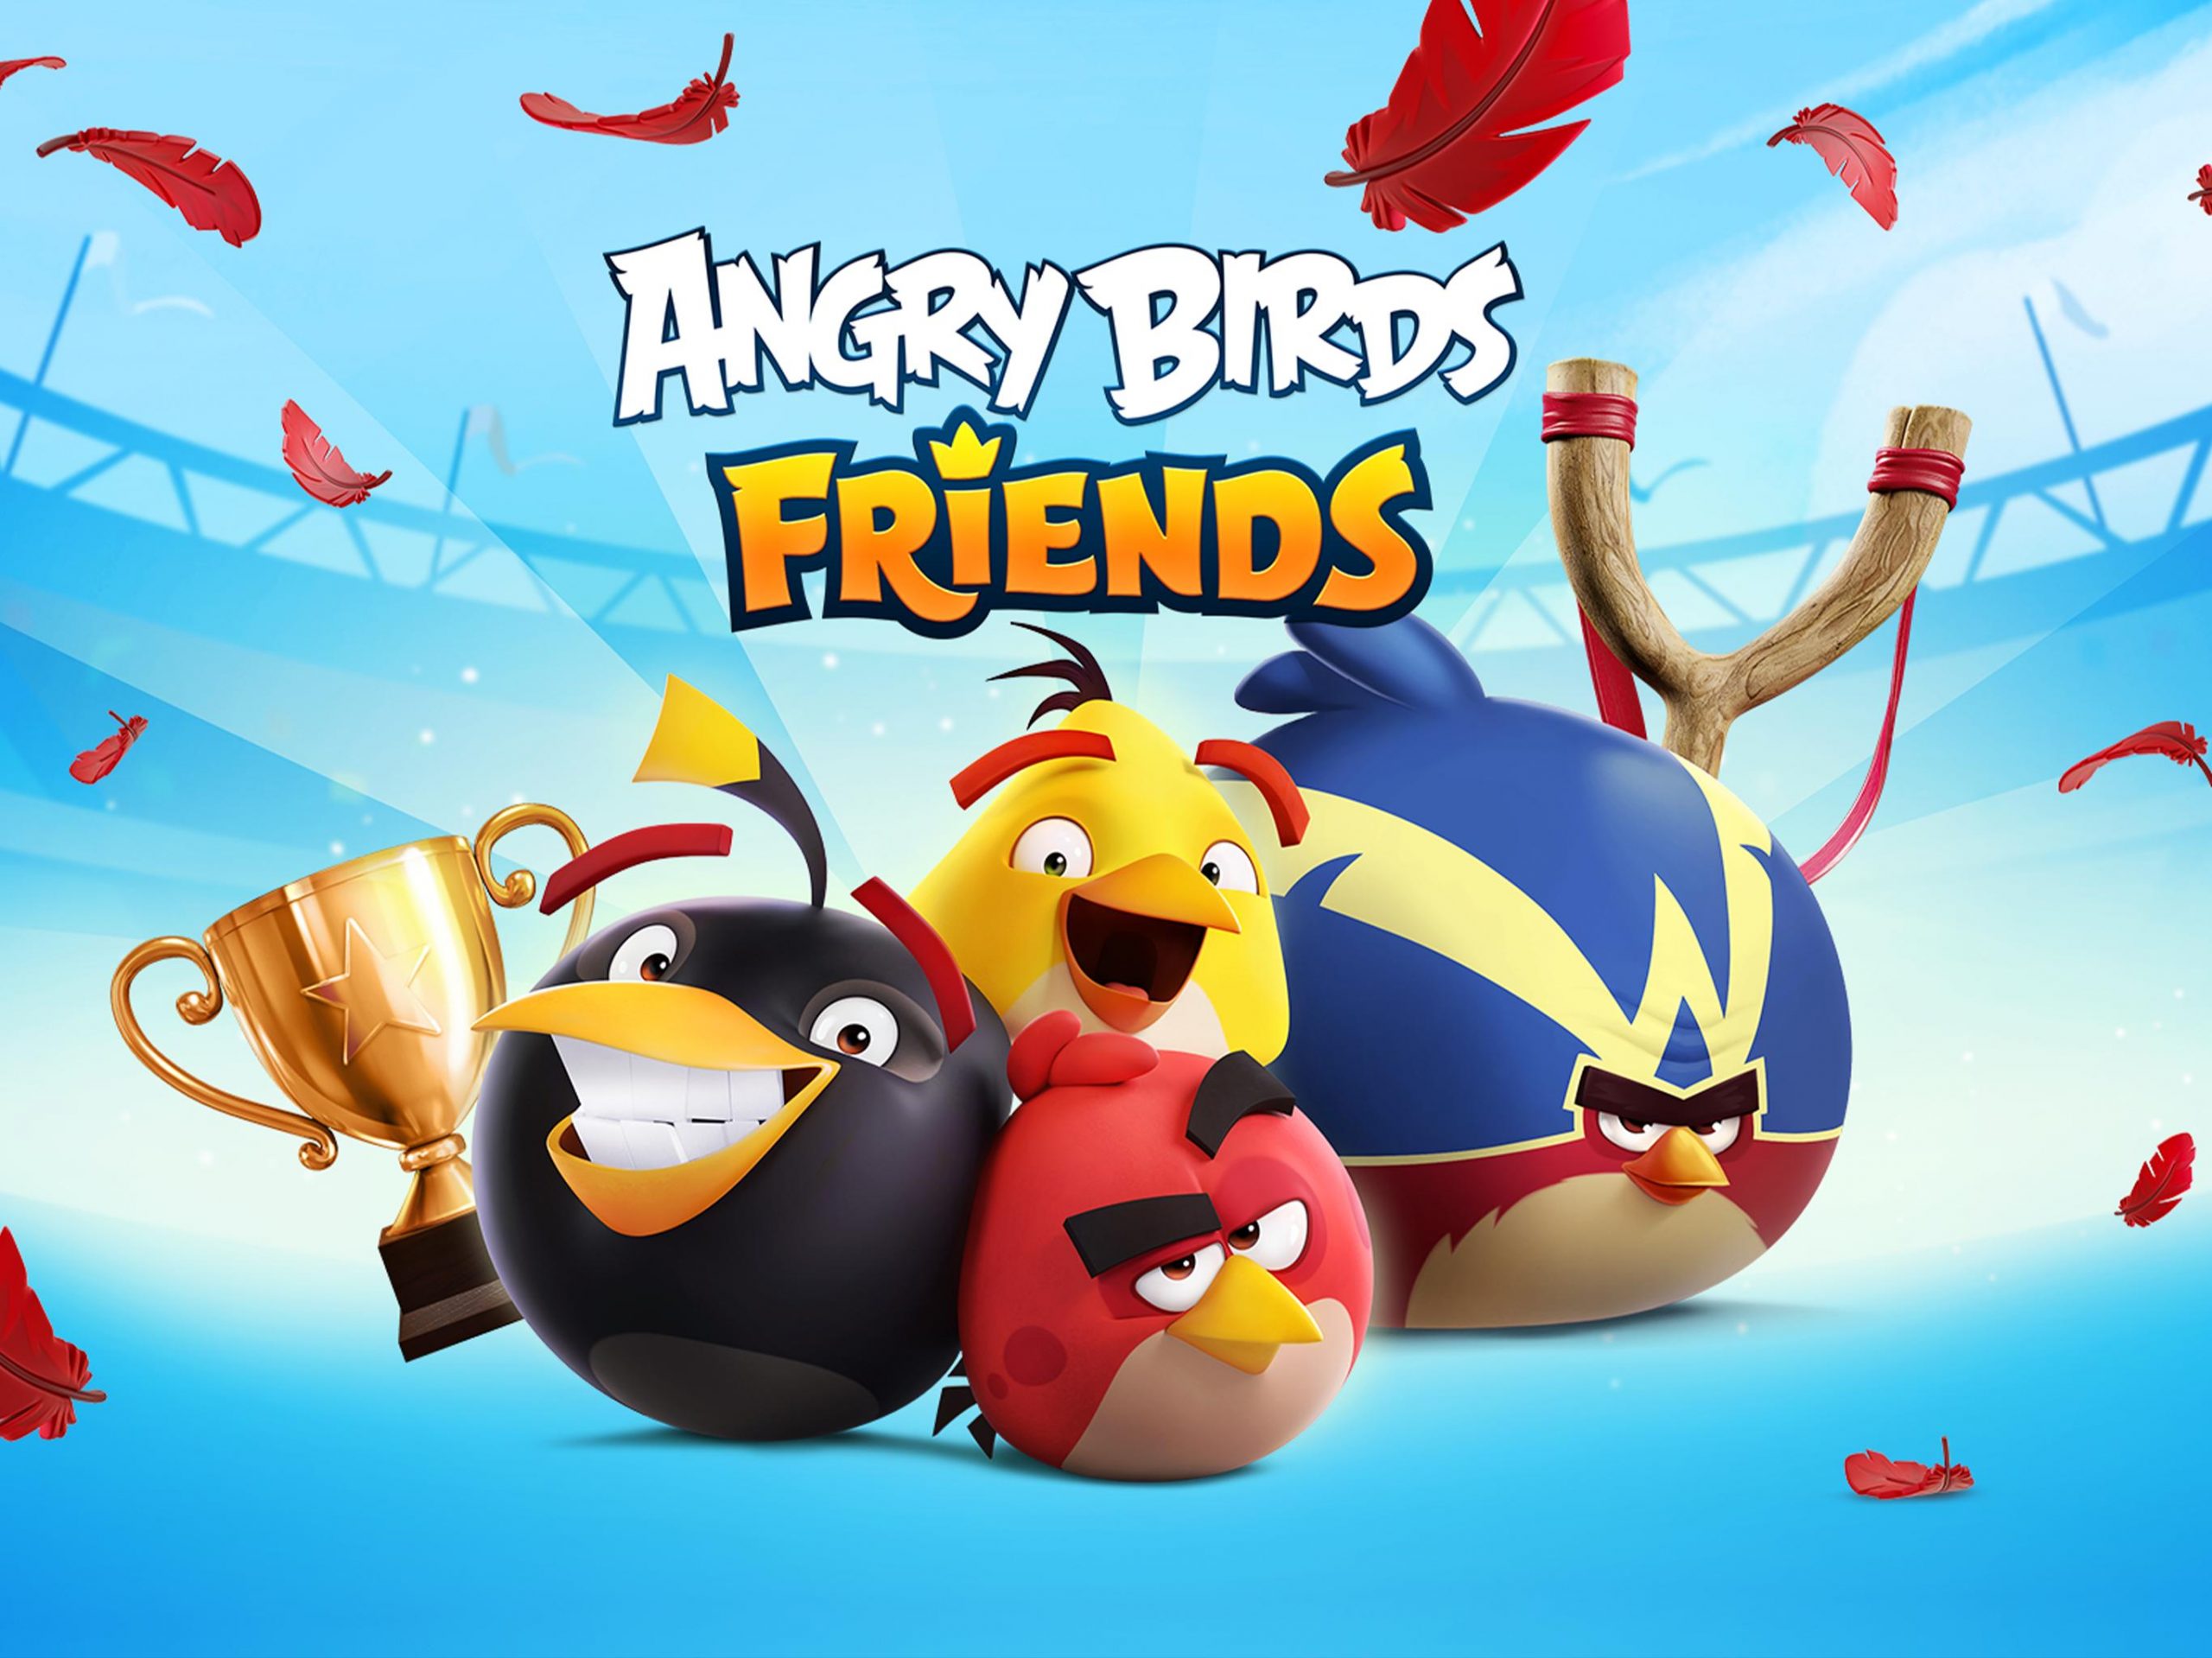 Angry Birds друзья